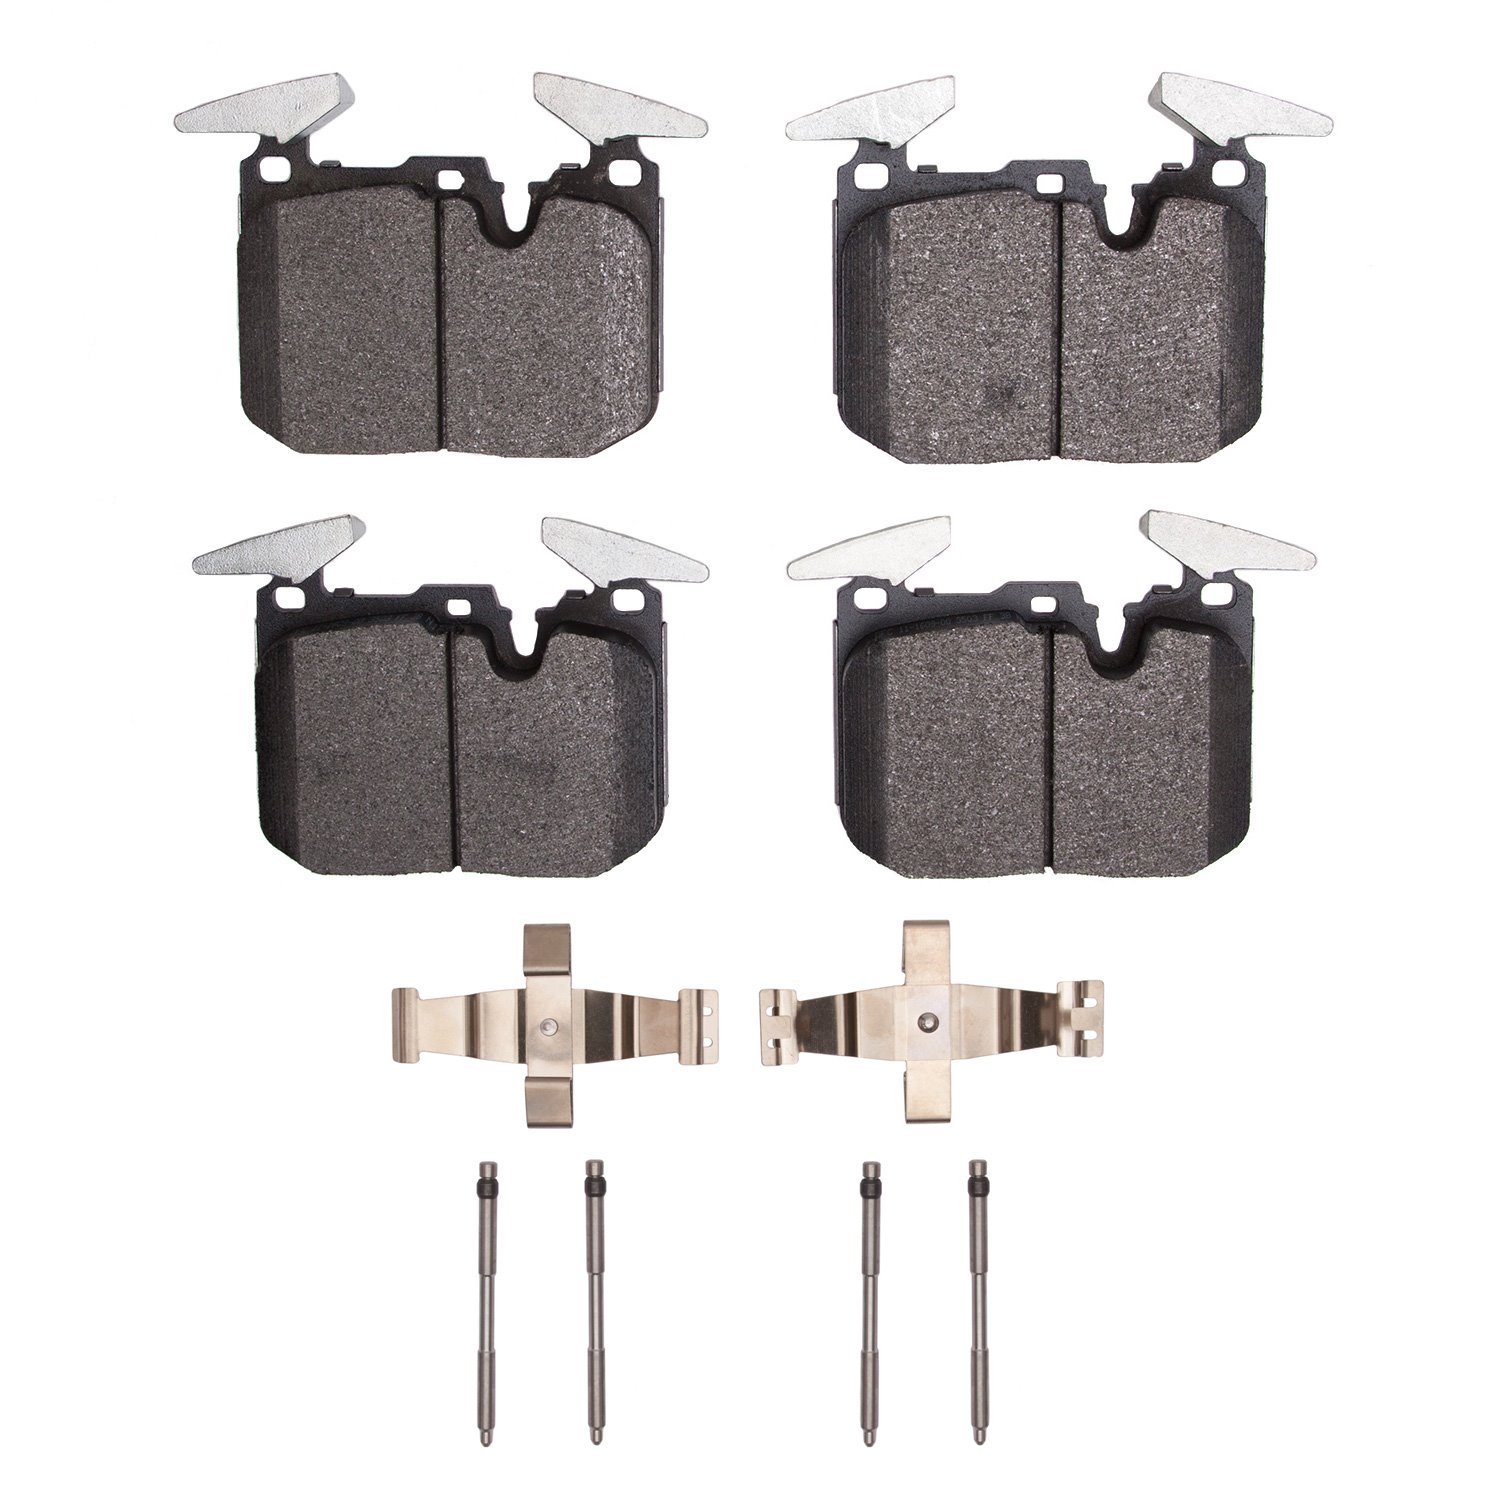 Optimum OE Brake Pads & Hardware Kit, 2015-2020 BMW, Position: Front